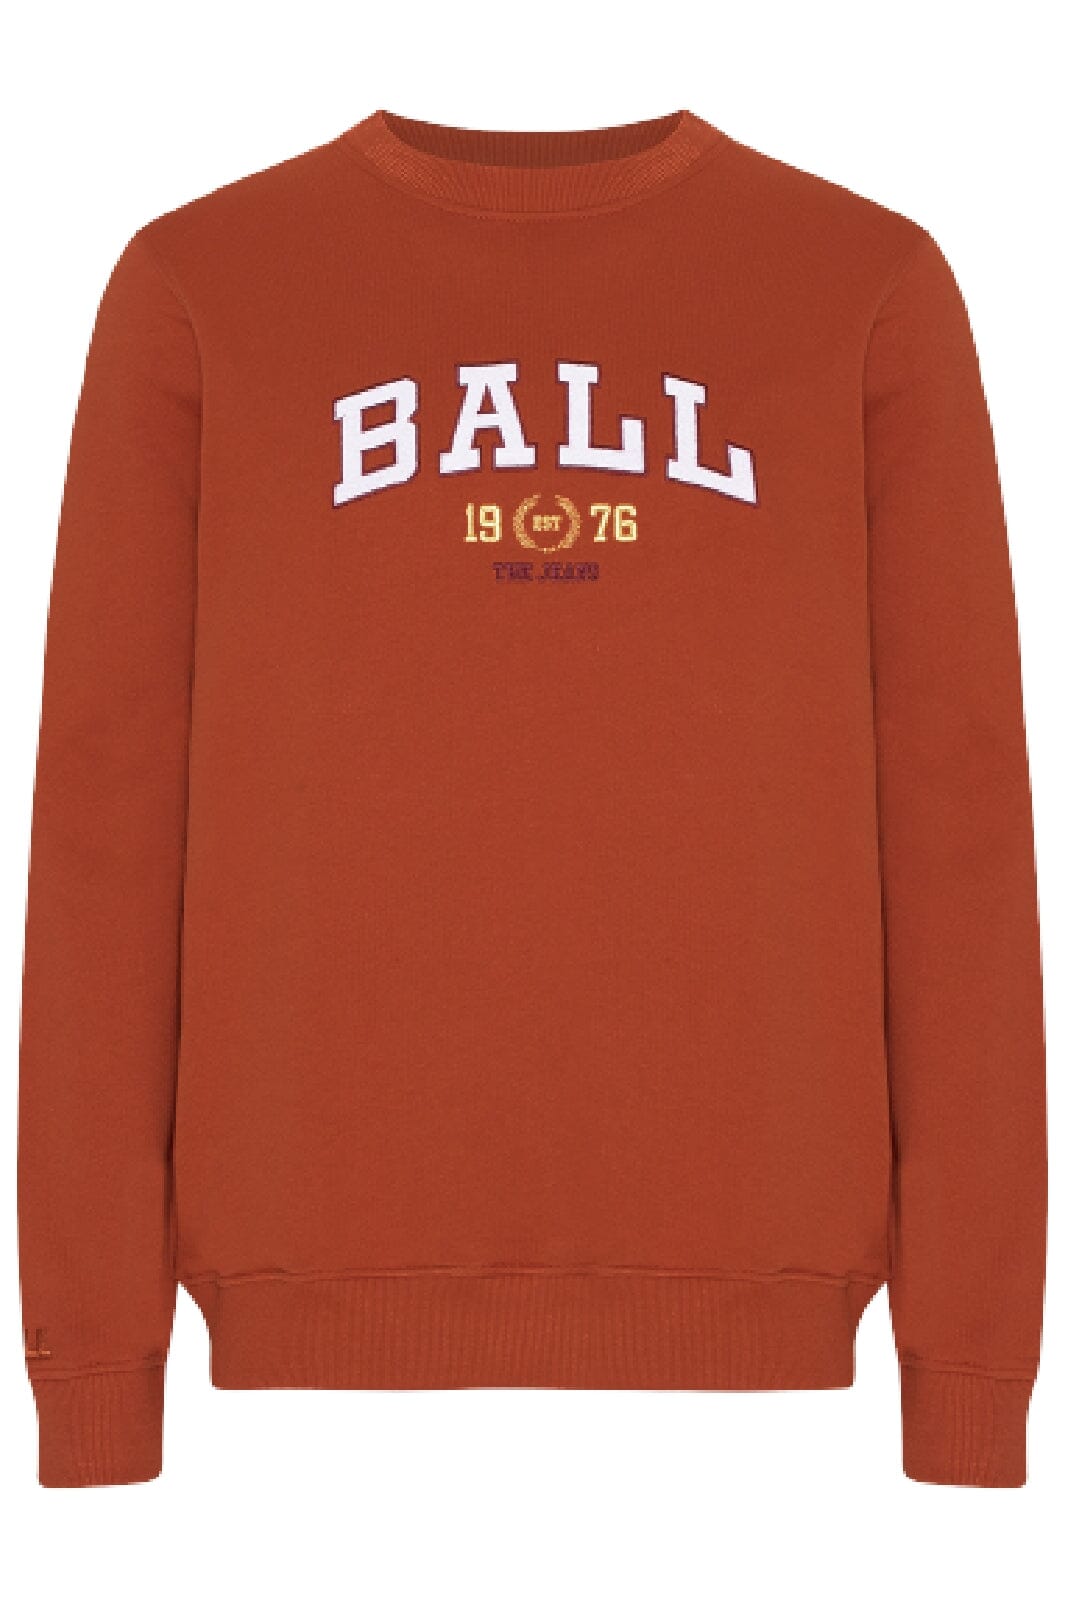 Ball - L. Taylor - Rooibos Sweatshirts 